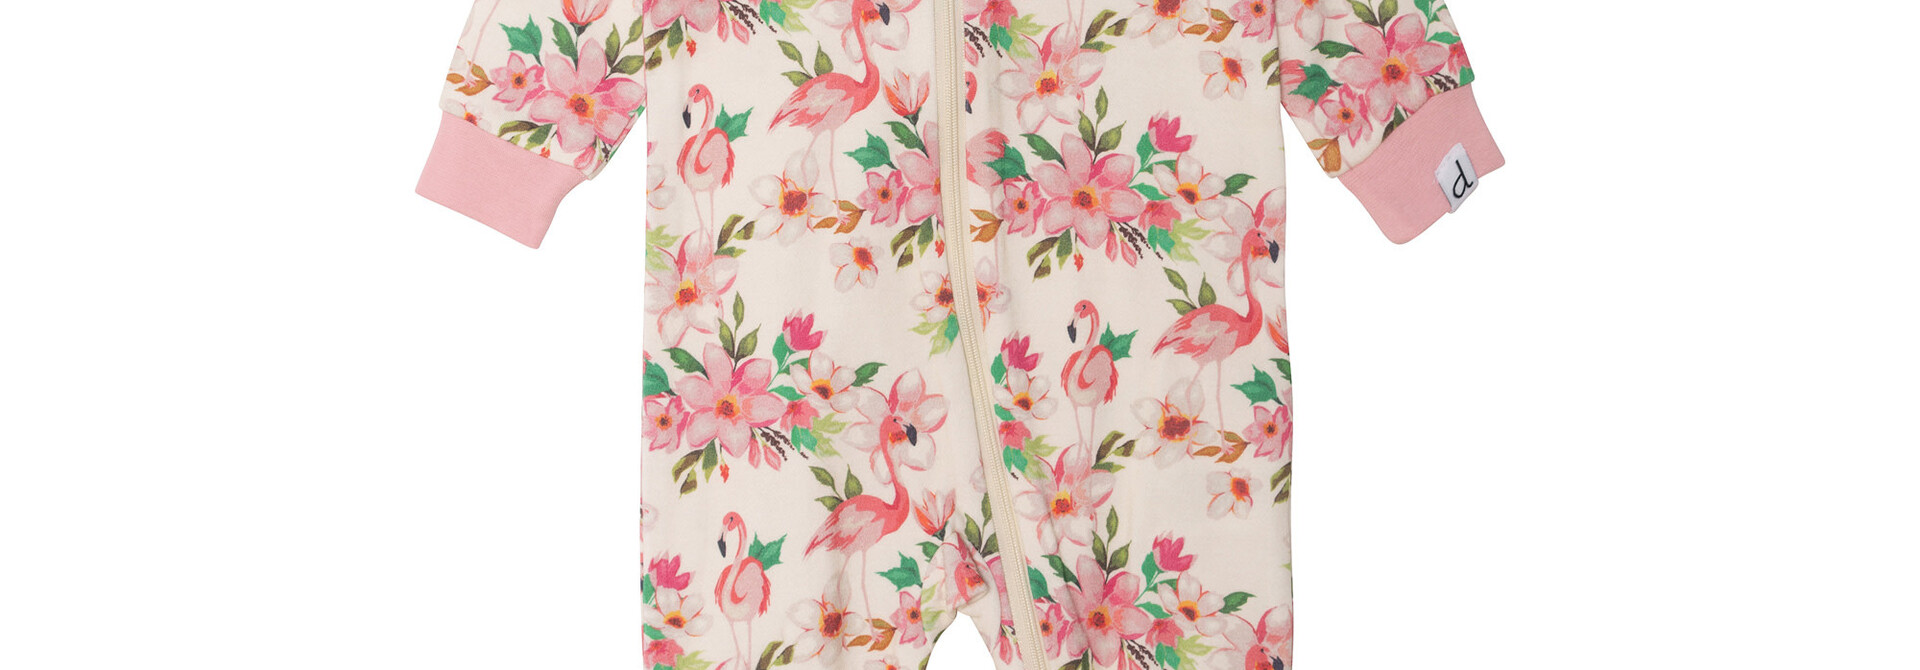 Pyjama une-pièce - FLAMANTS ROSES